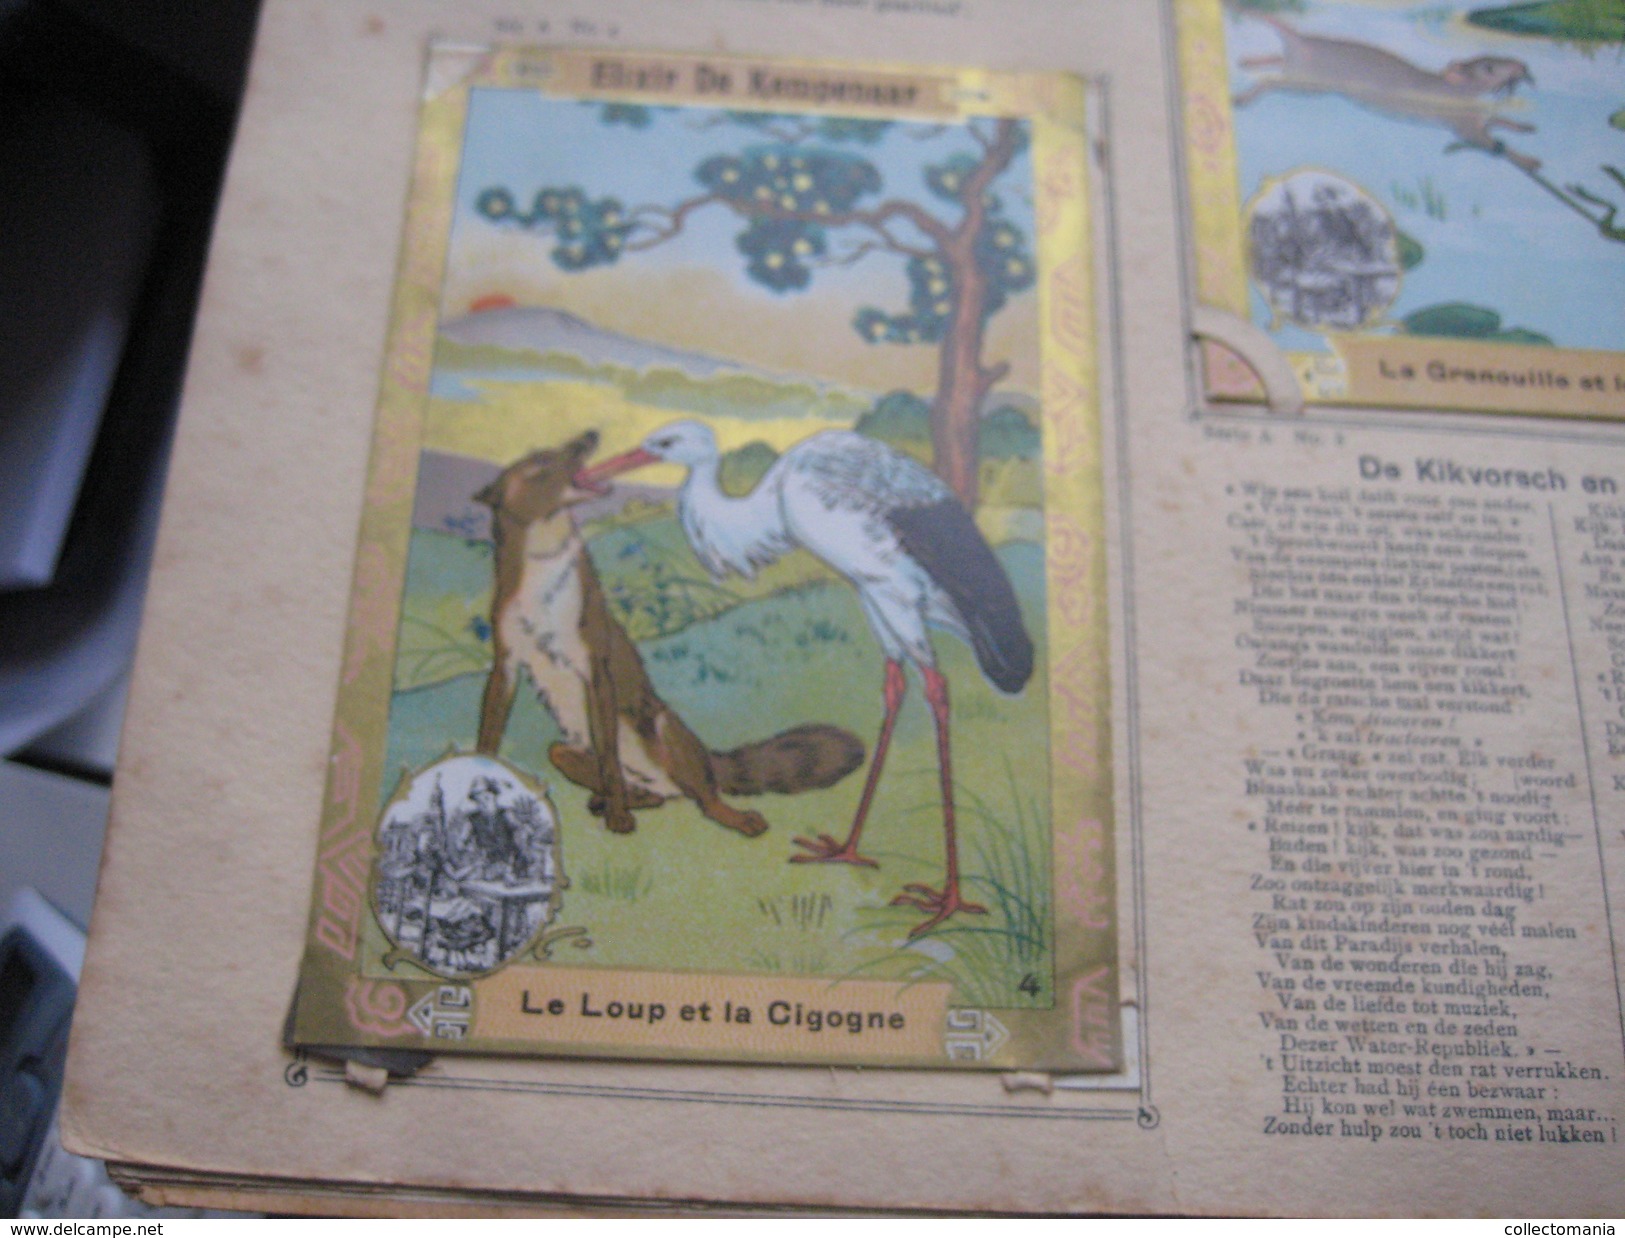 48 inserted litho cards each 12,3X8,3cm Album Japanese theme Fables de la Fontaine PUB Neefs Jacques, around 1900